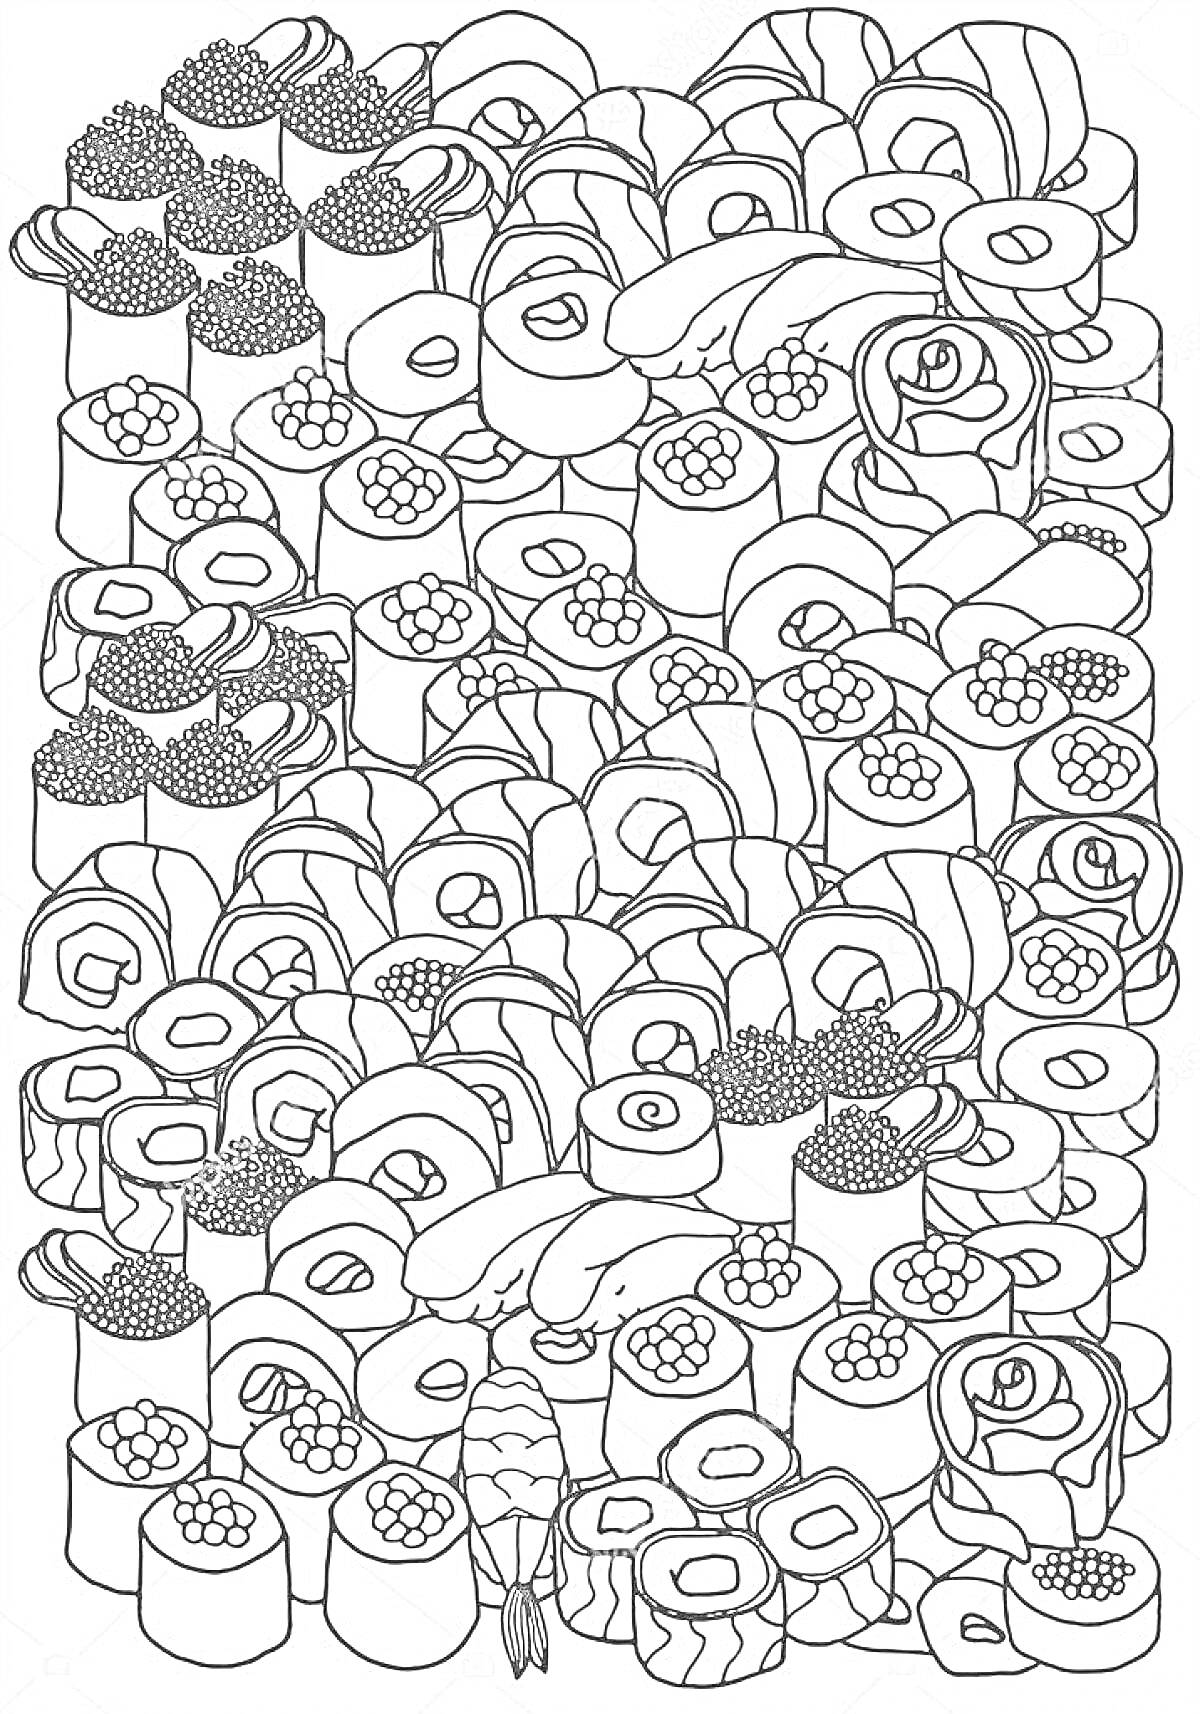 Раскраска набор различных роллов и суши